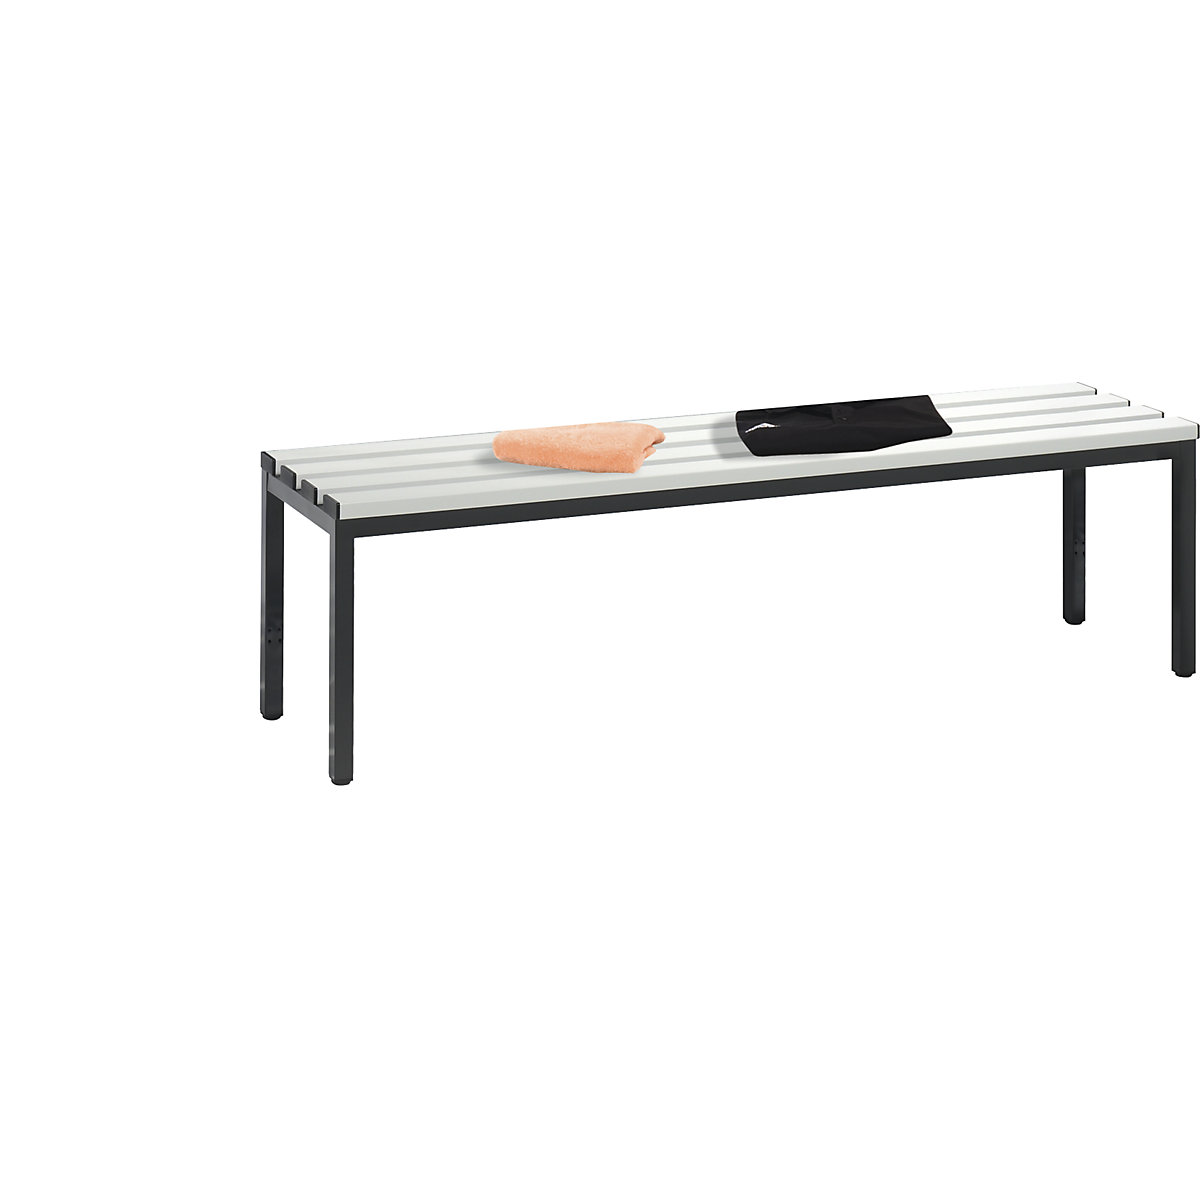 Šatnová lavice BASIC – C+P, plast, délka 1500 mm, světlá šedá-2